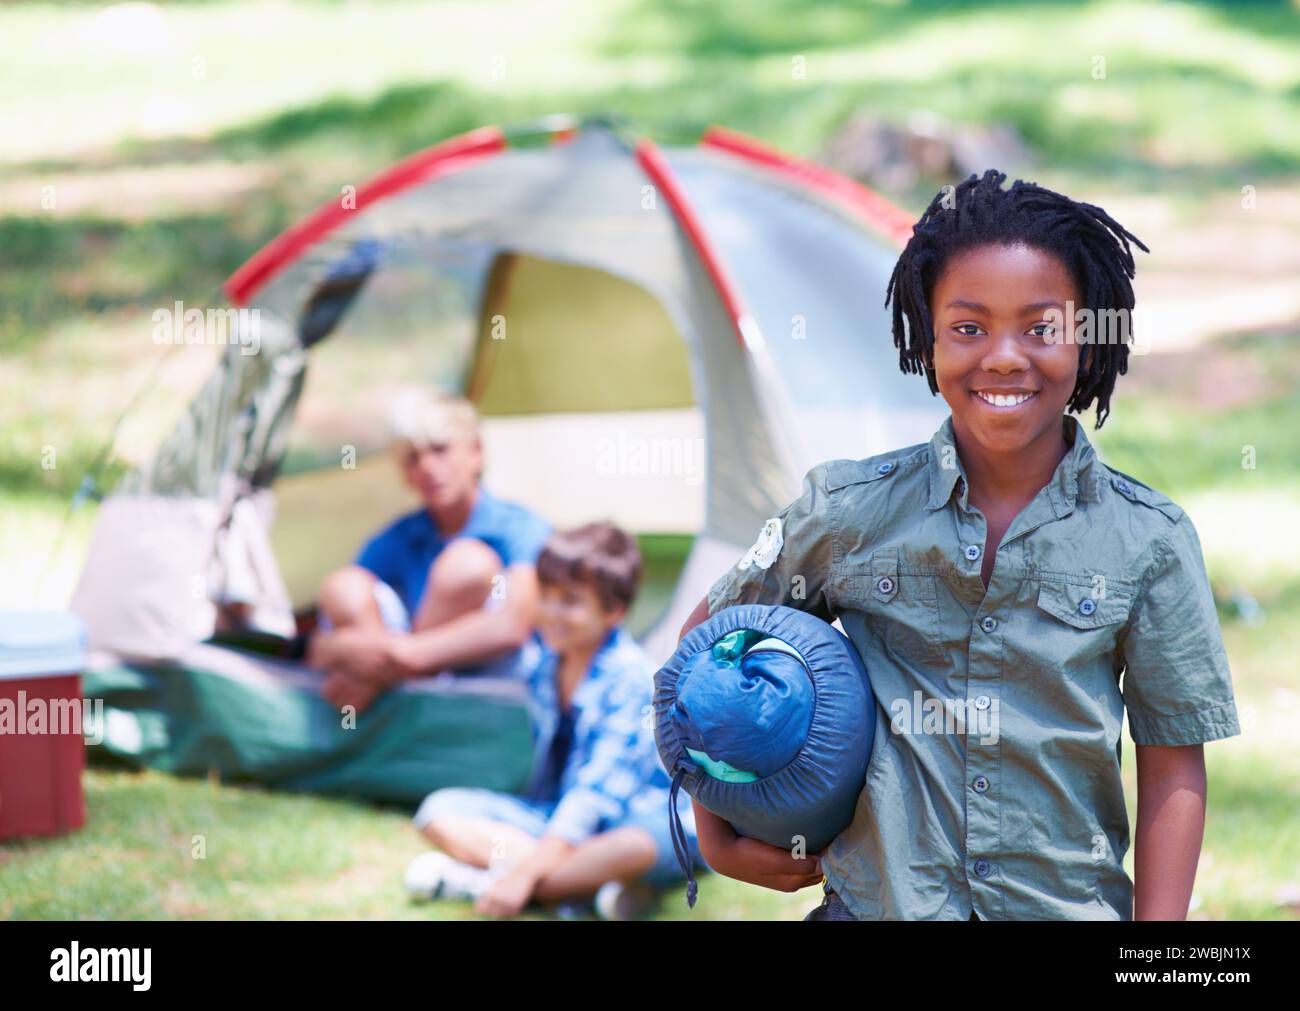 Sac de couchage, camping ou portrait d'enfant africain dans la nature sur l'aventure ou des vacances dans le parc. Heureux, commencer ou garçon avec le sourire dans la forêt, le jardin Banque D'Images